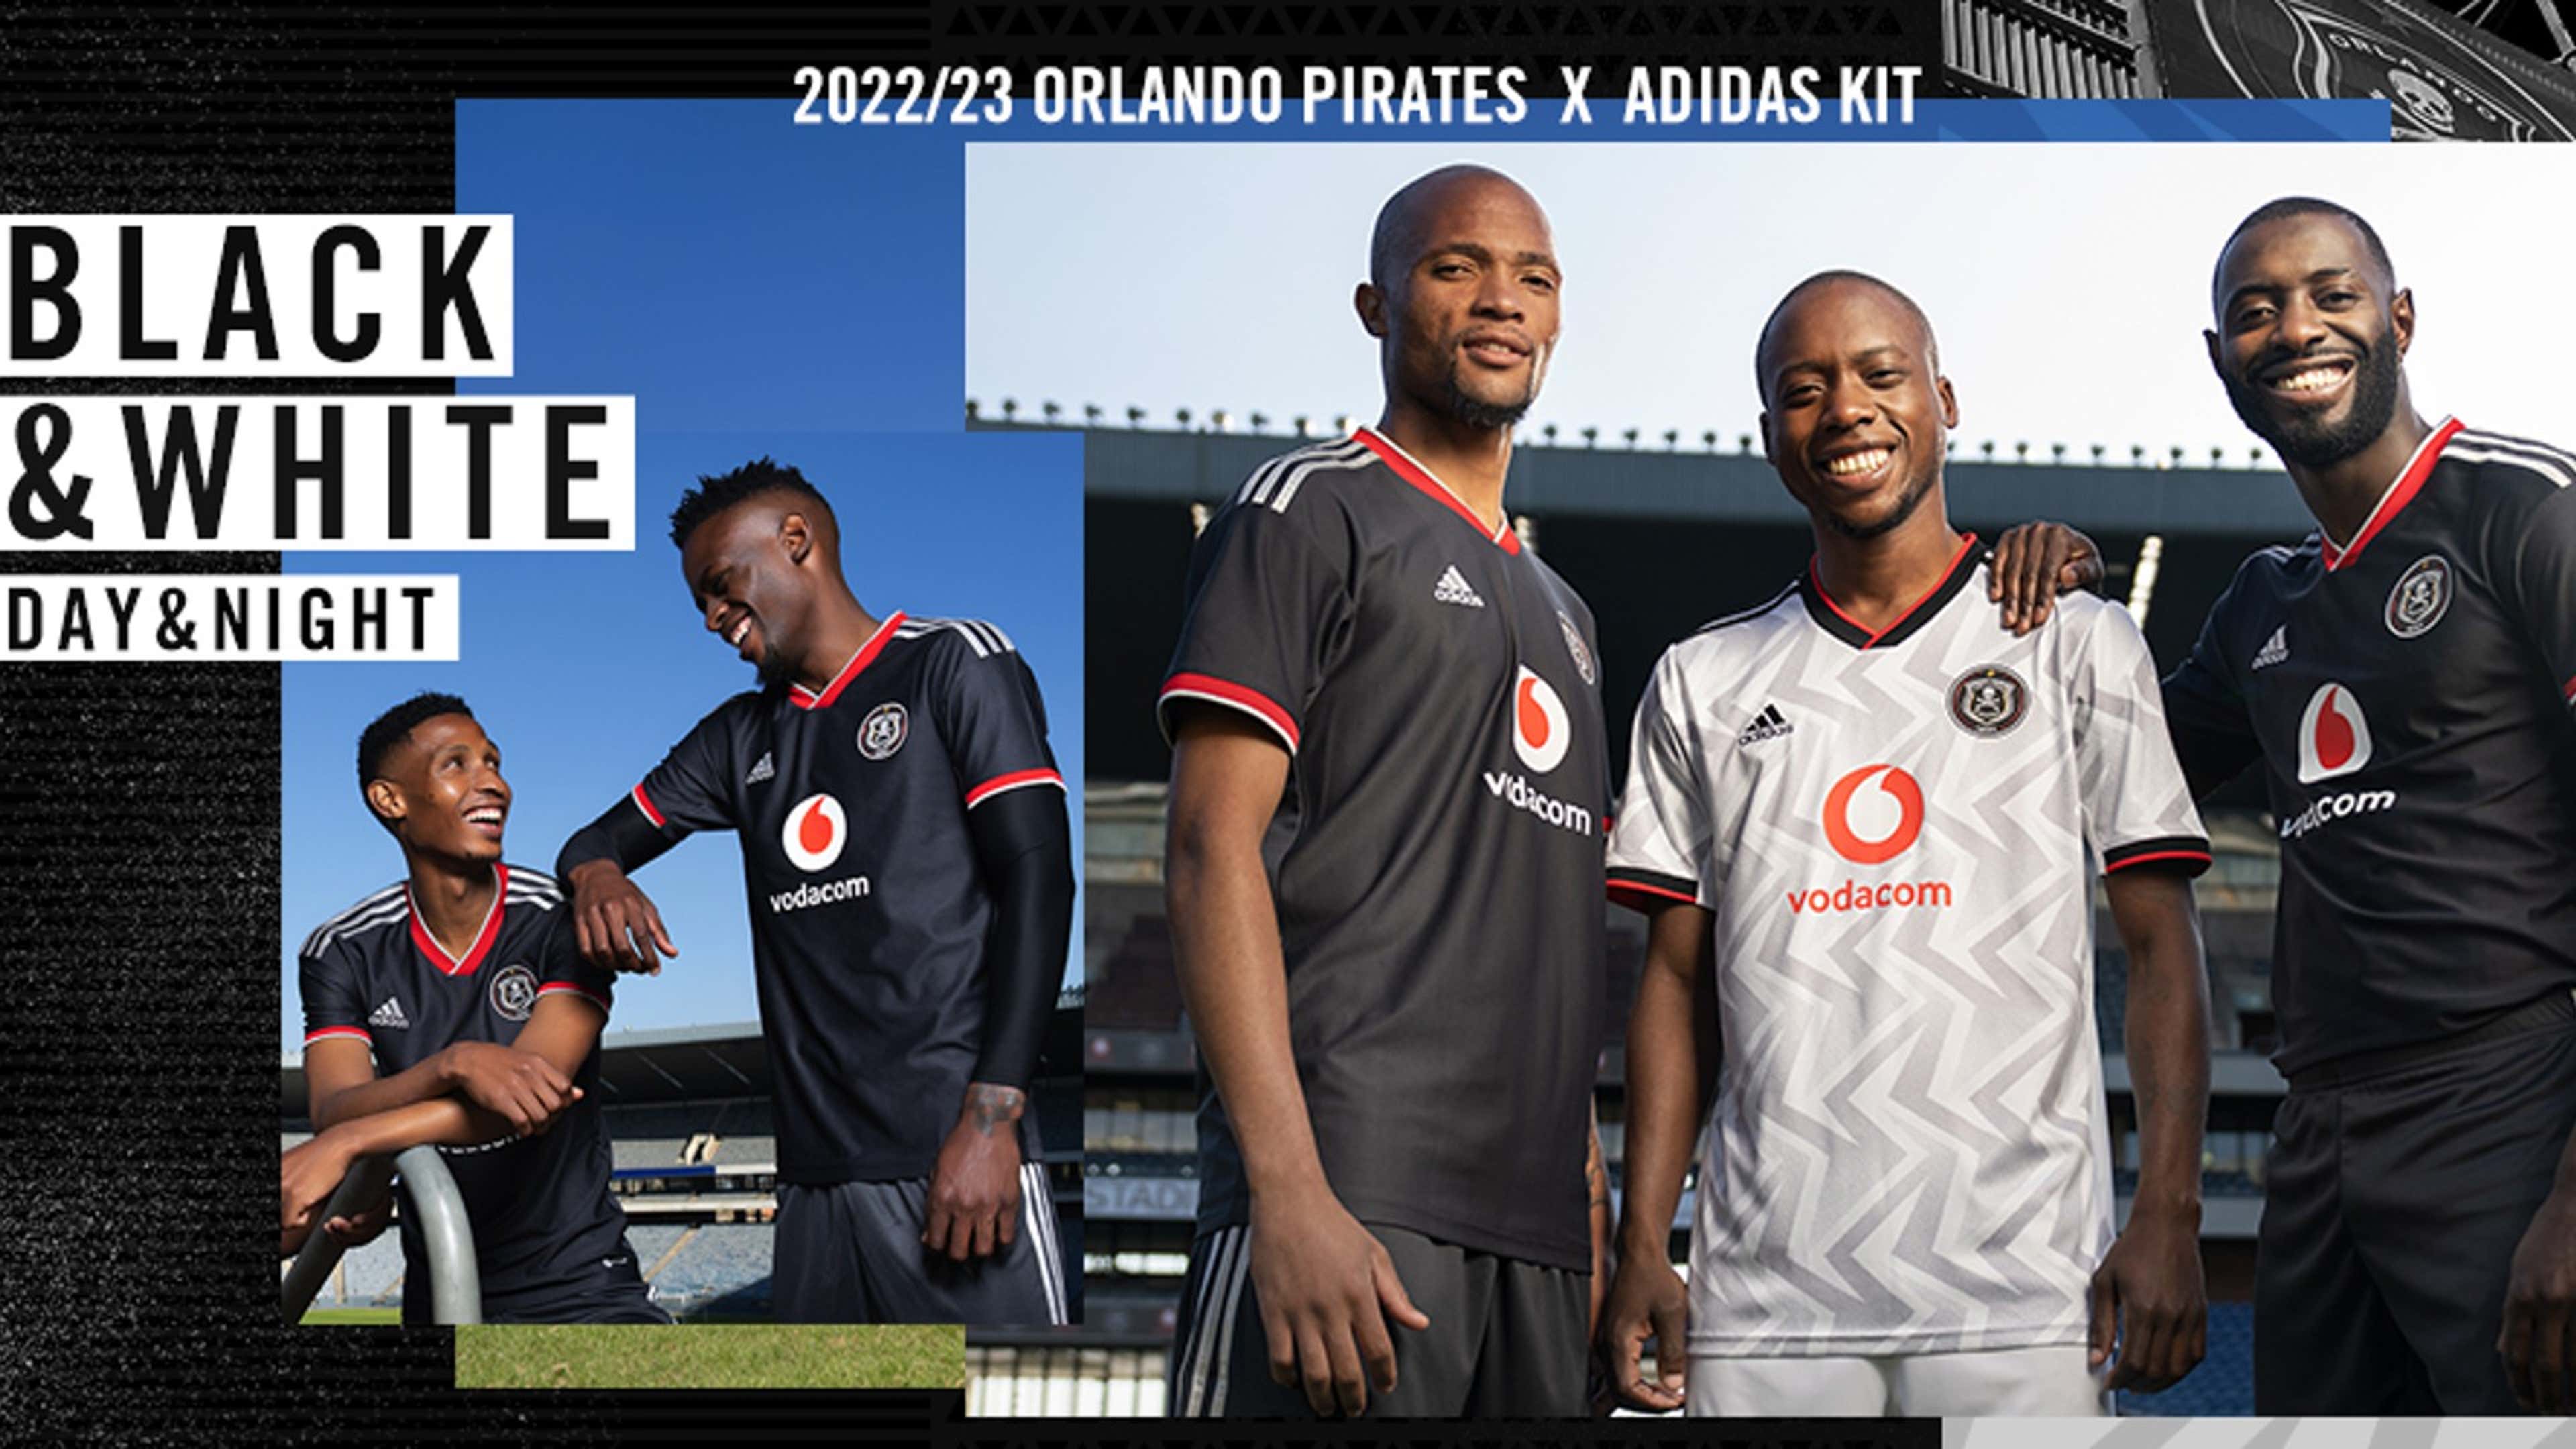 Orlando Pirates unveil their new kit